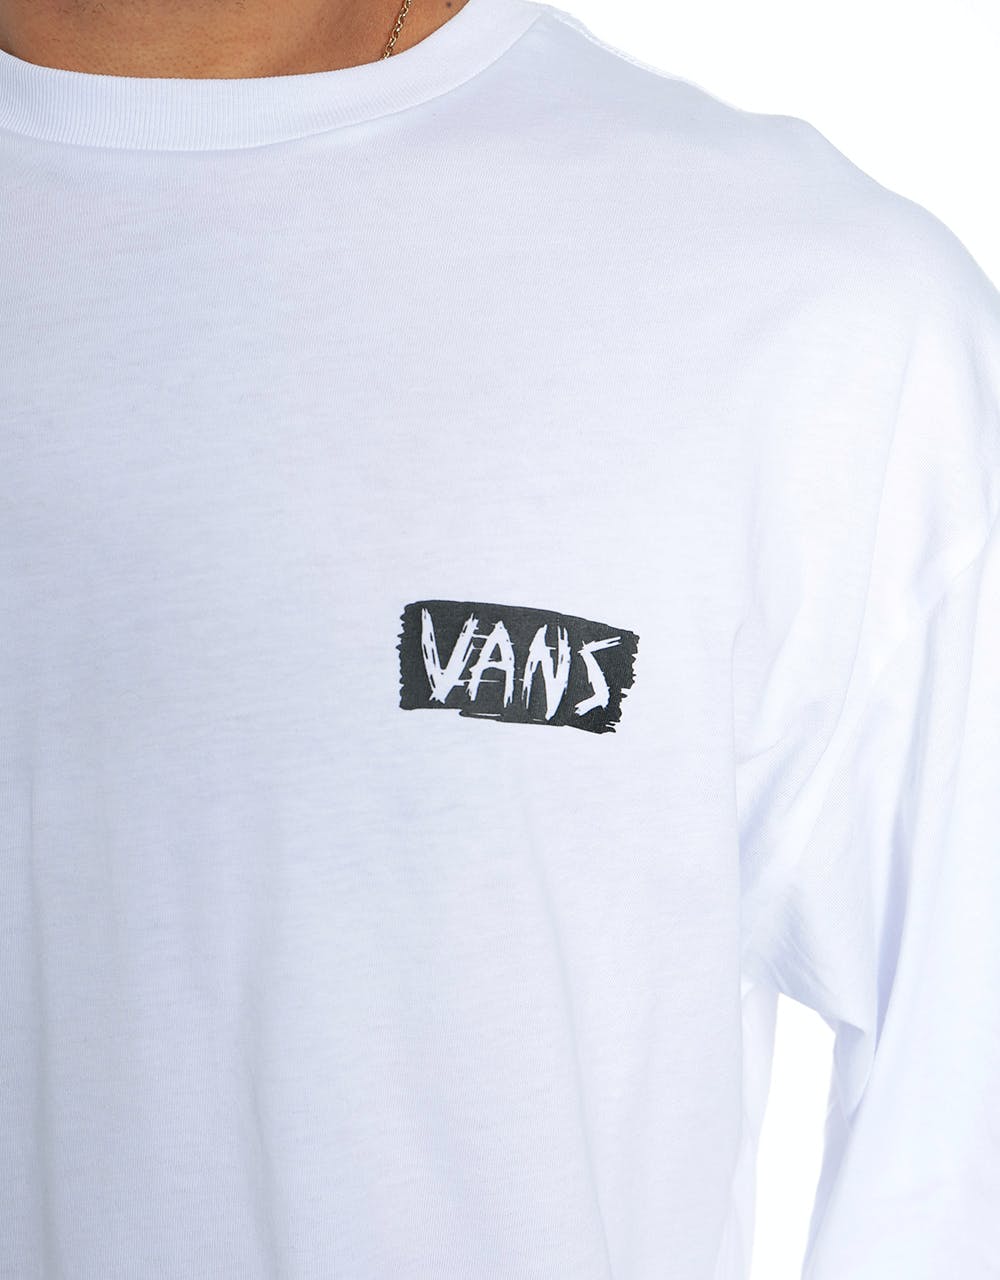 Vans Scratched L/S T-Shirt - White